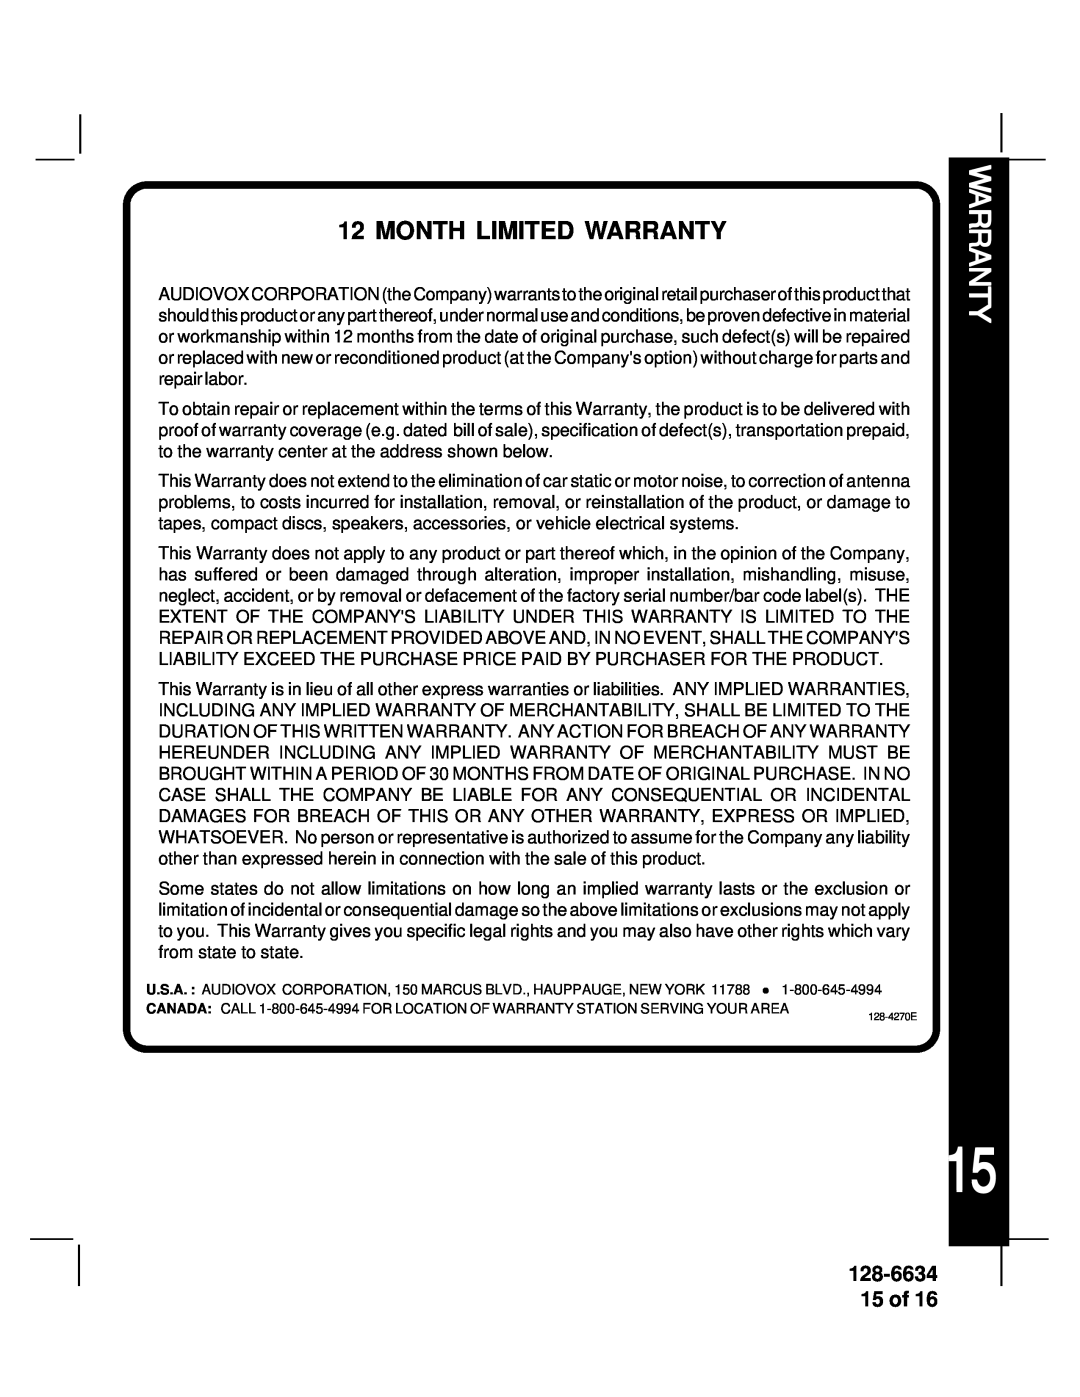 Audiovox AV-428V manual Month Limited Warranty, 128-6634 15 of 